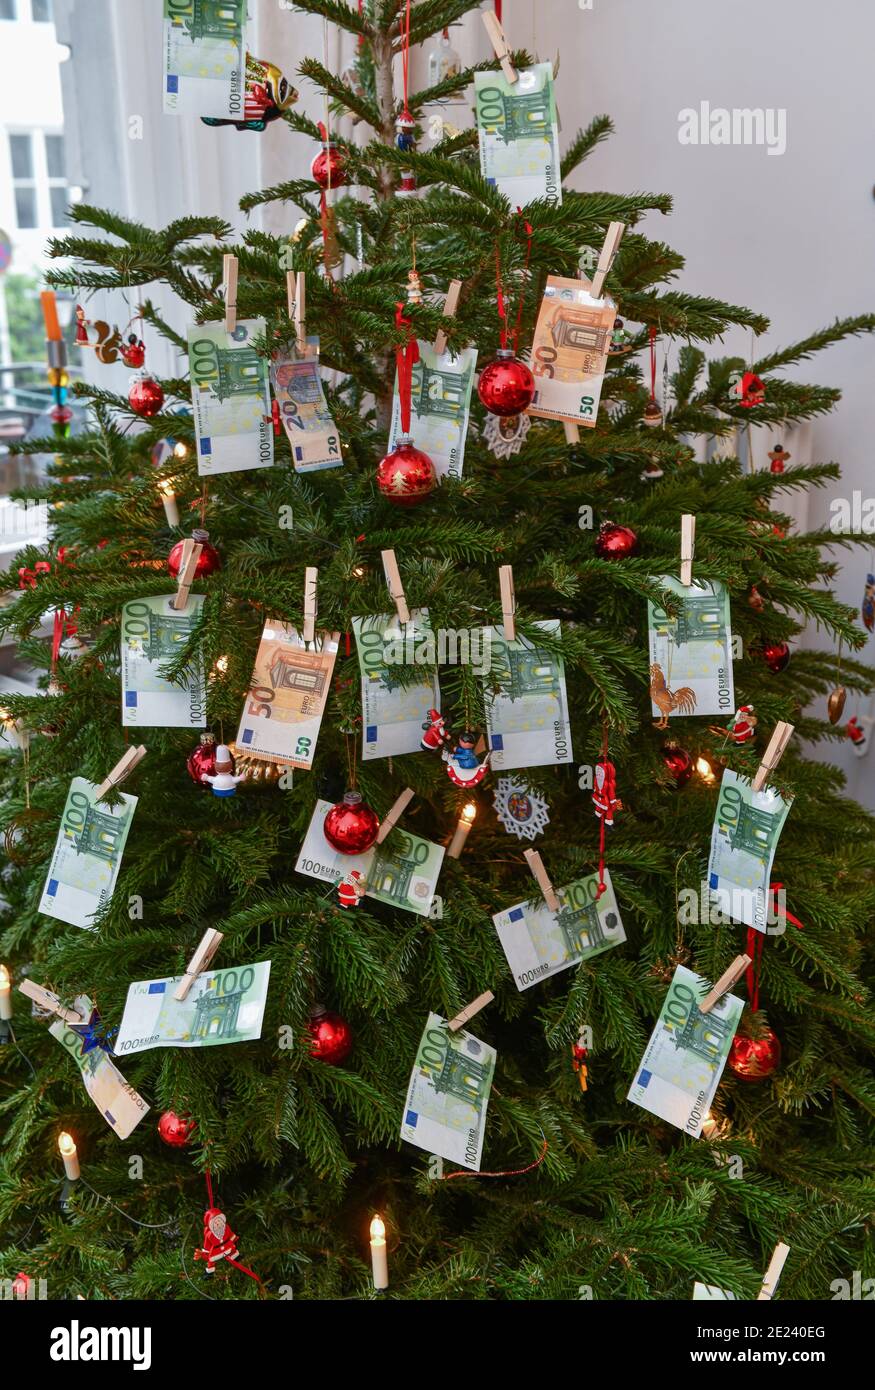 Symbolfoto, Geldgeschenk, Weihnachten Stock Photo